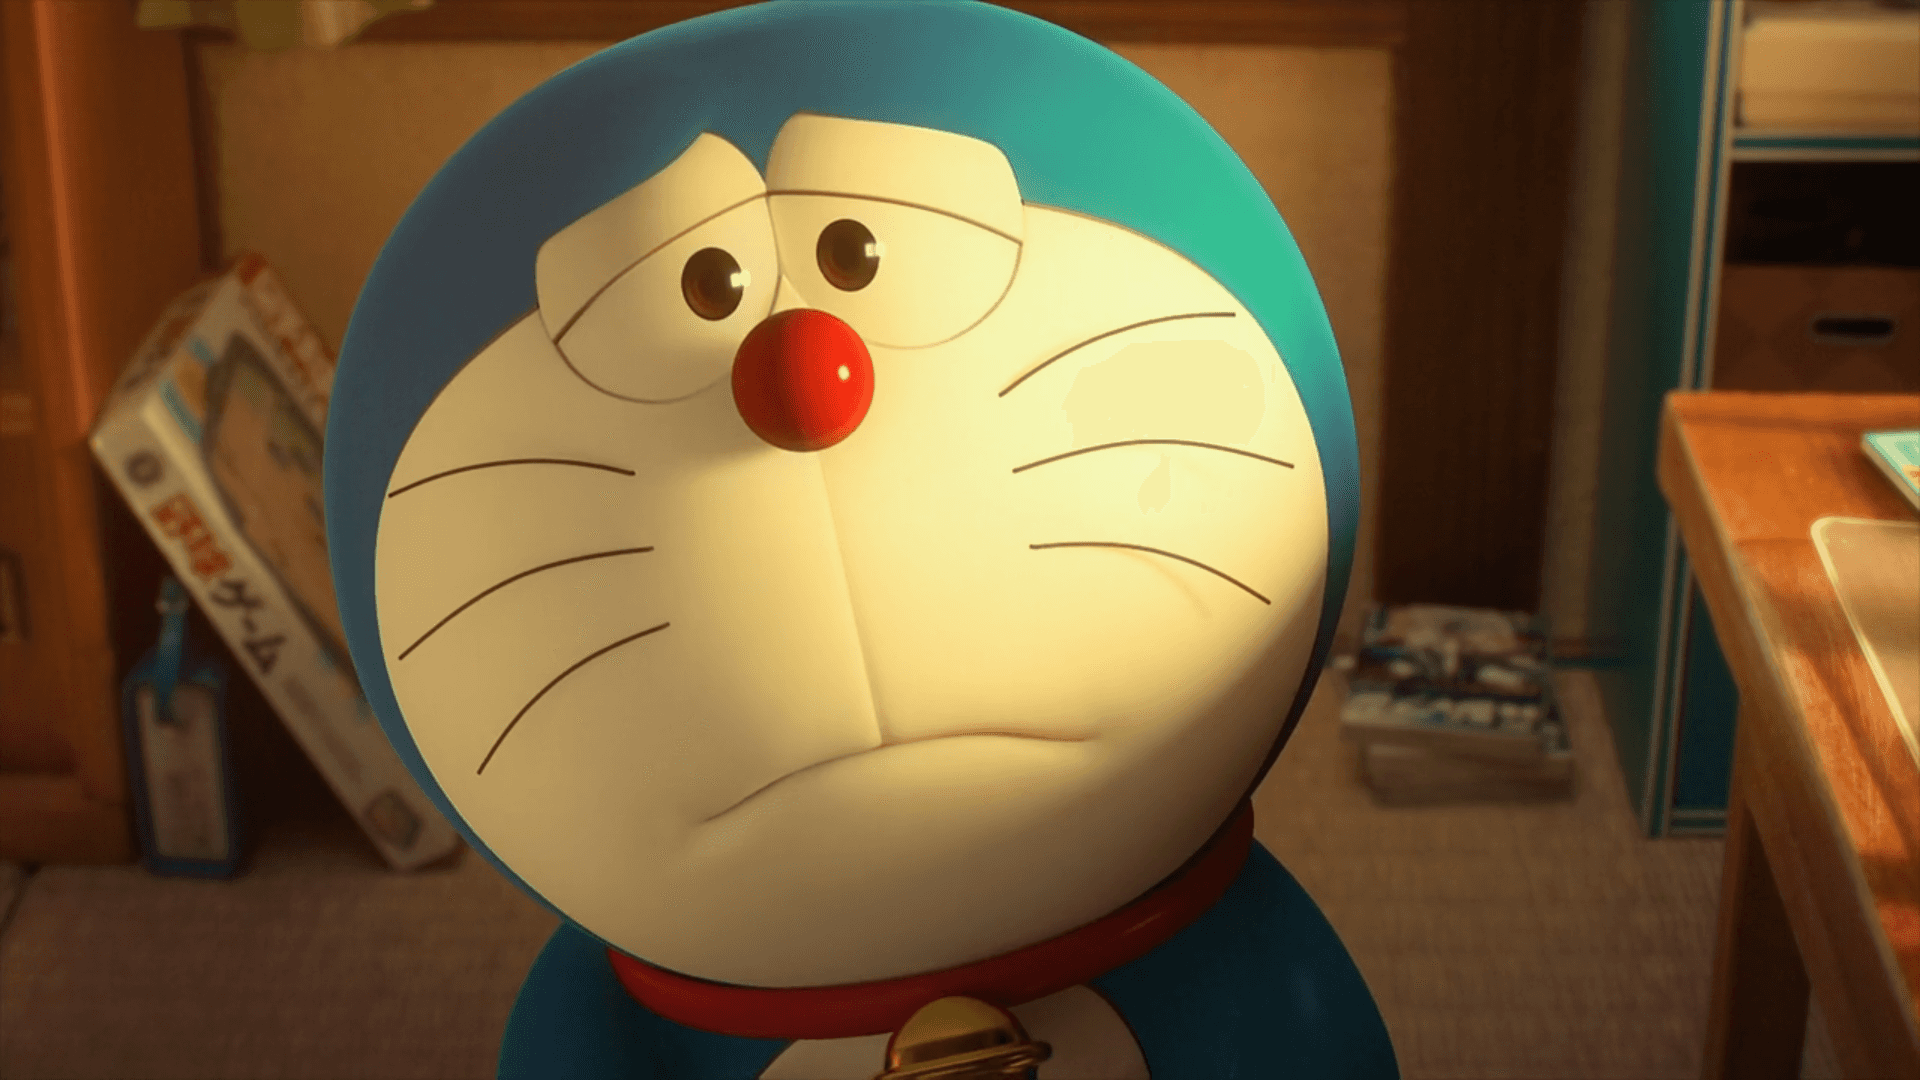 Doraemonno Seu Mundo De Imaginação.